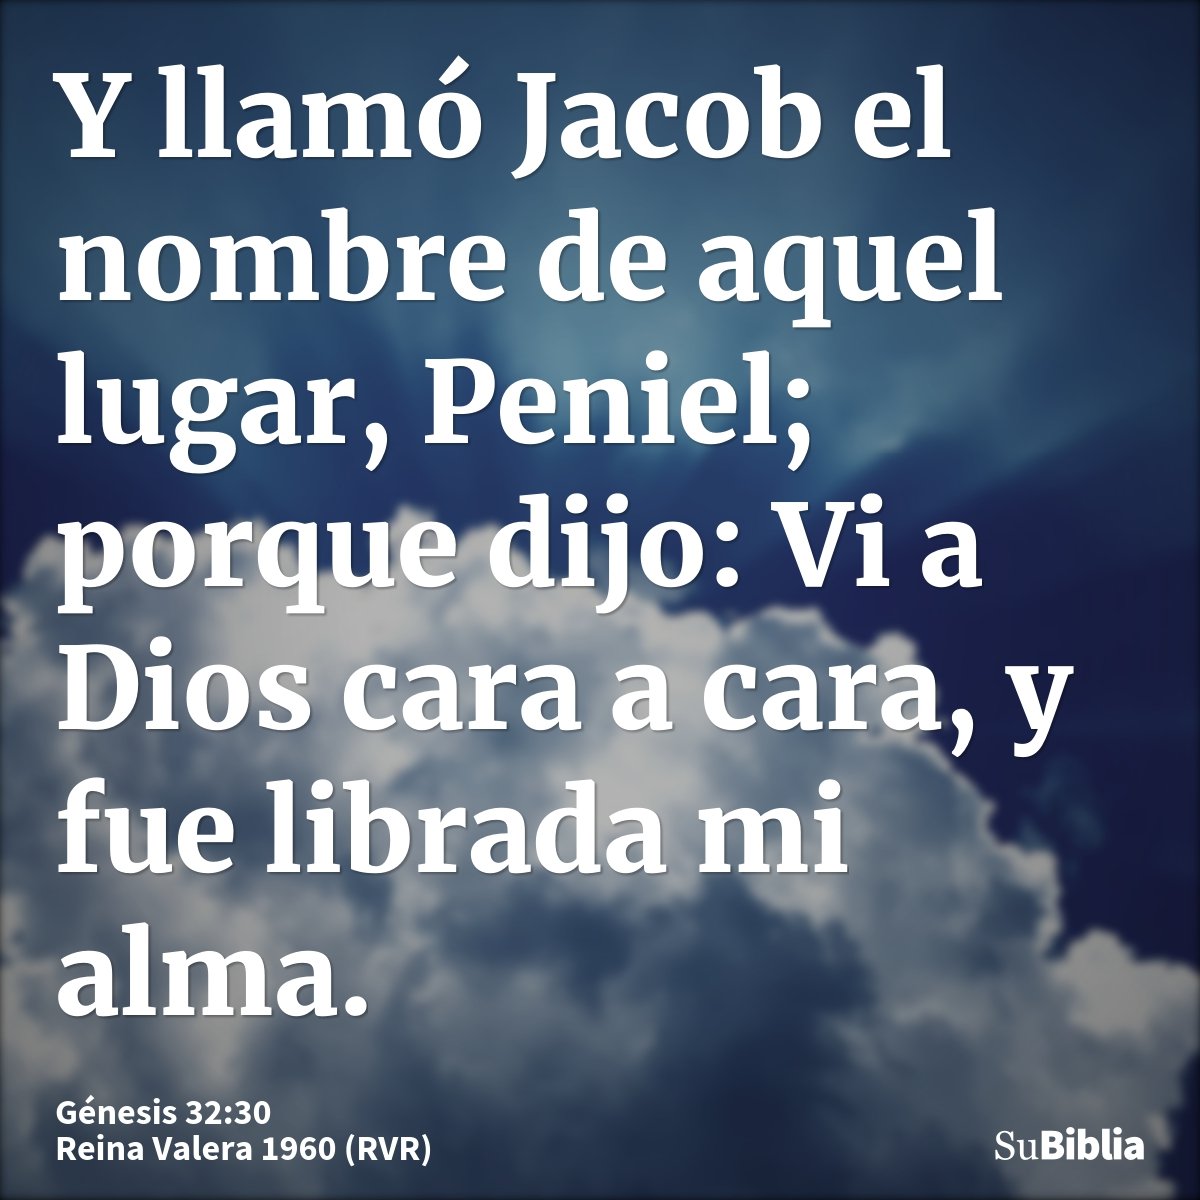 Y llamó Jacob el nombre de aquel lugar, Peniel; porque dijo: Vi a Dios cara a cara, y fue librada mi alma.